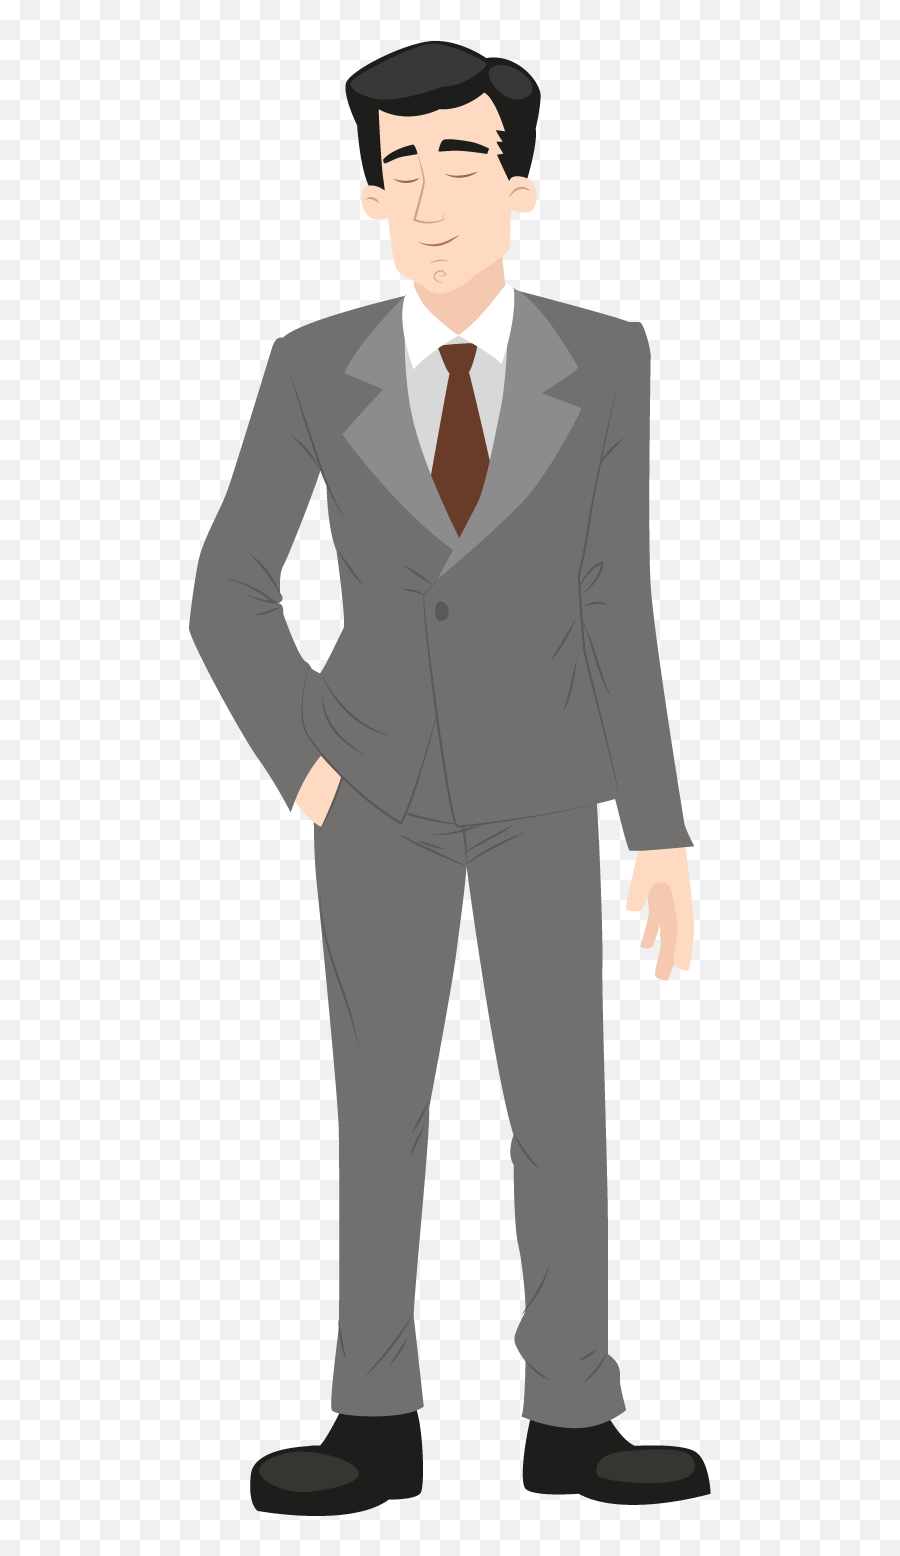 Men Clipart Suit Transparent - Man In A Suit Cartoon Png,Suit Transparent Background